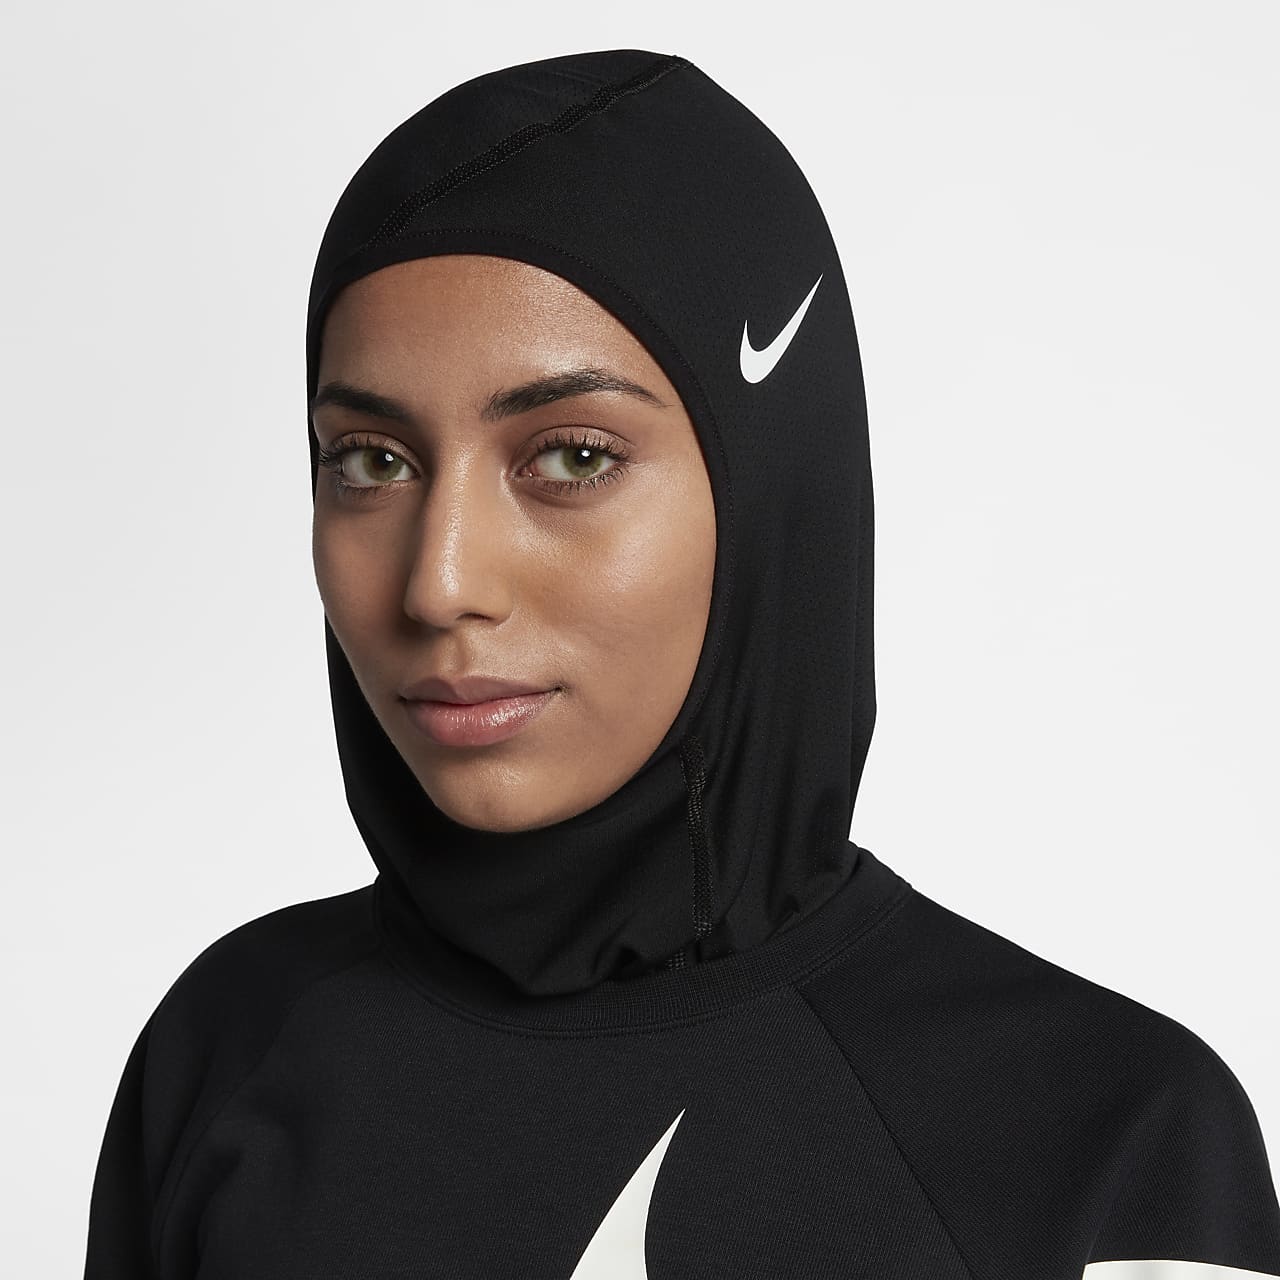 nike hijab 2.0